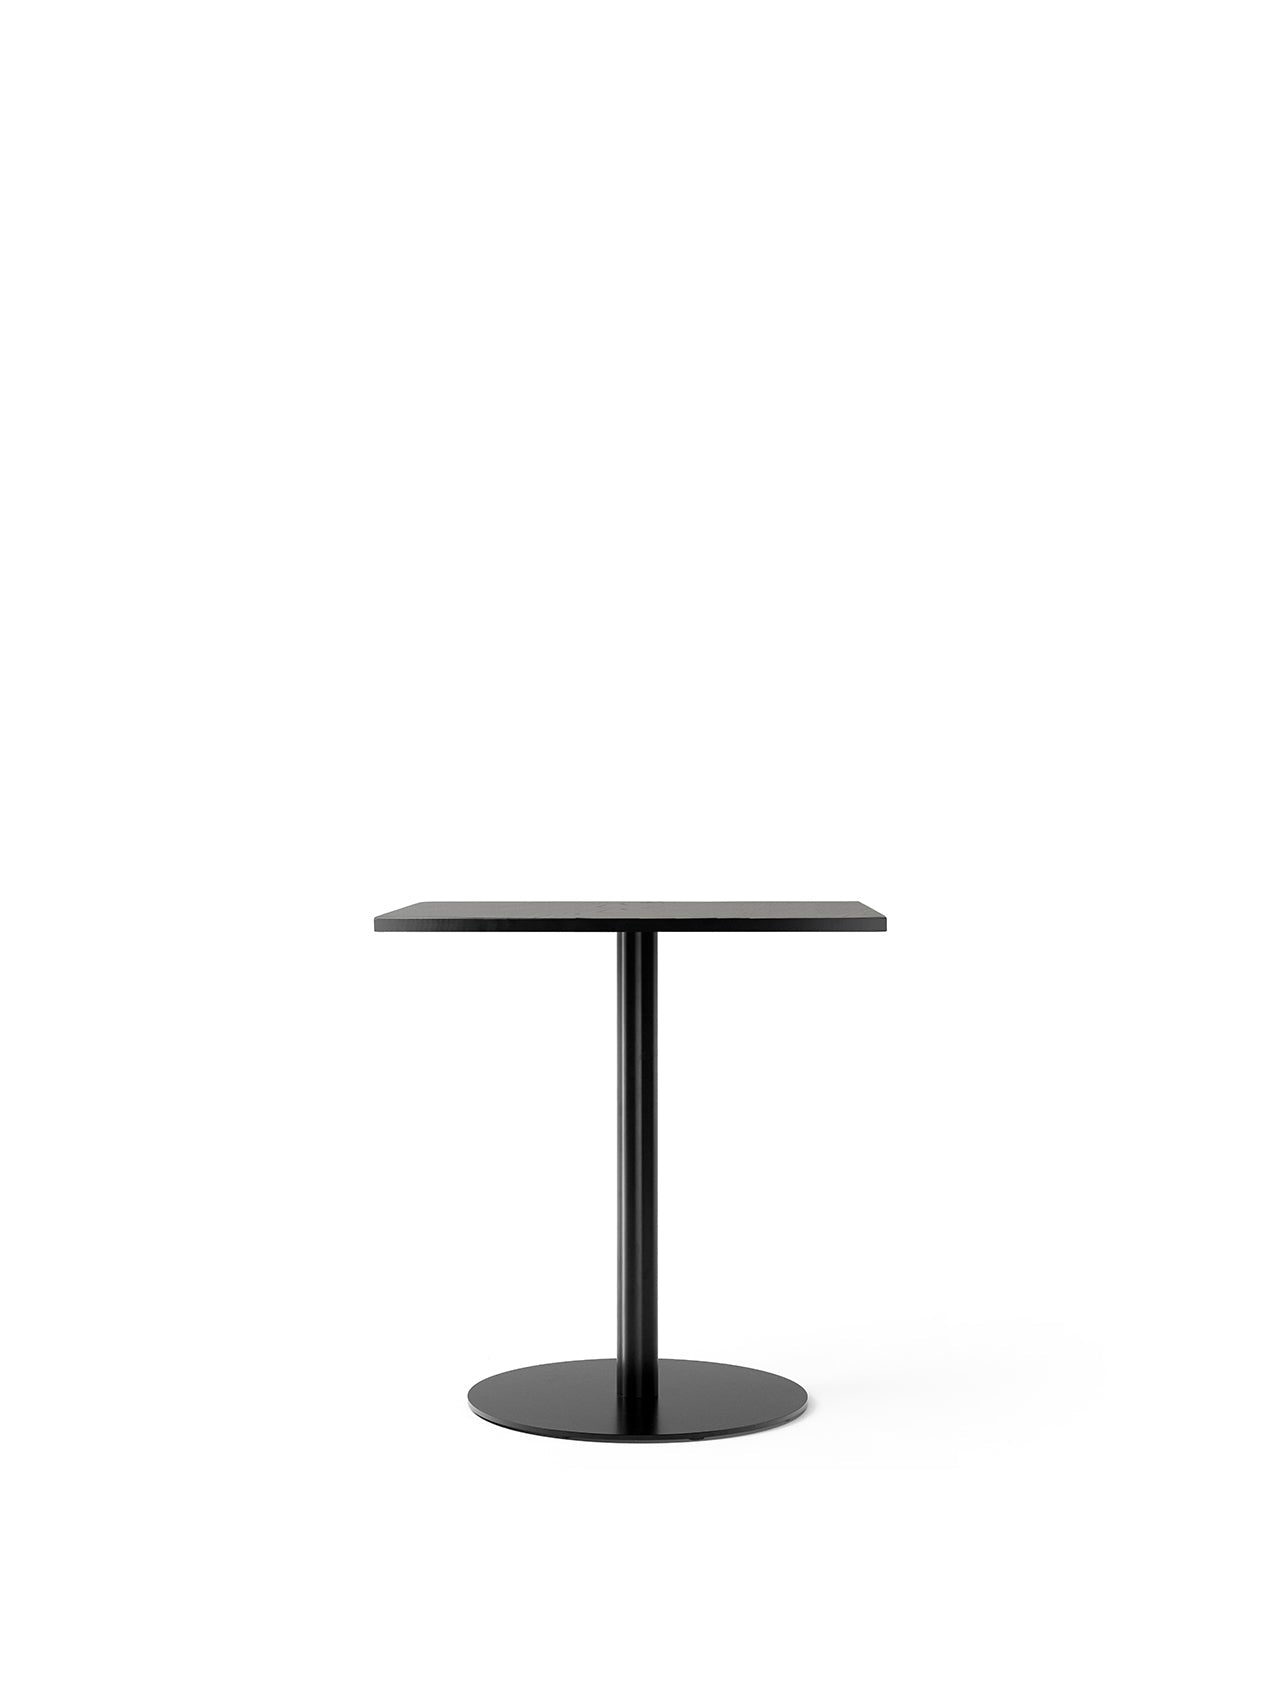 ハーバーコラムテーブル、60x70